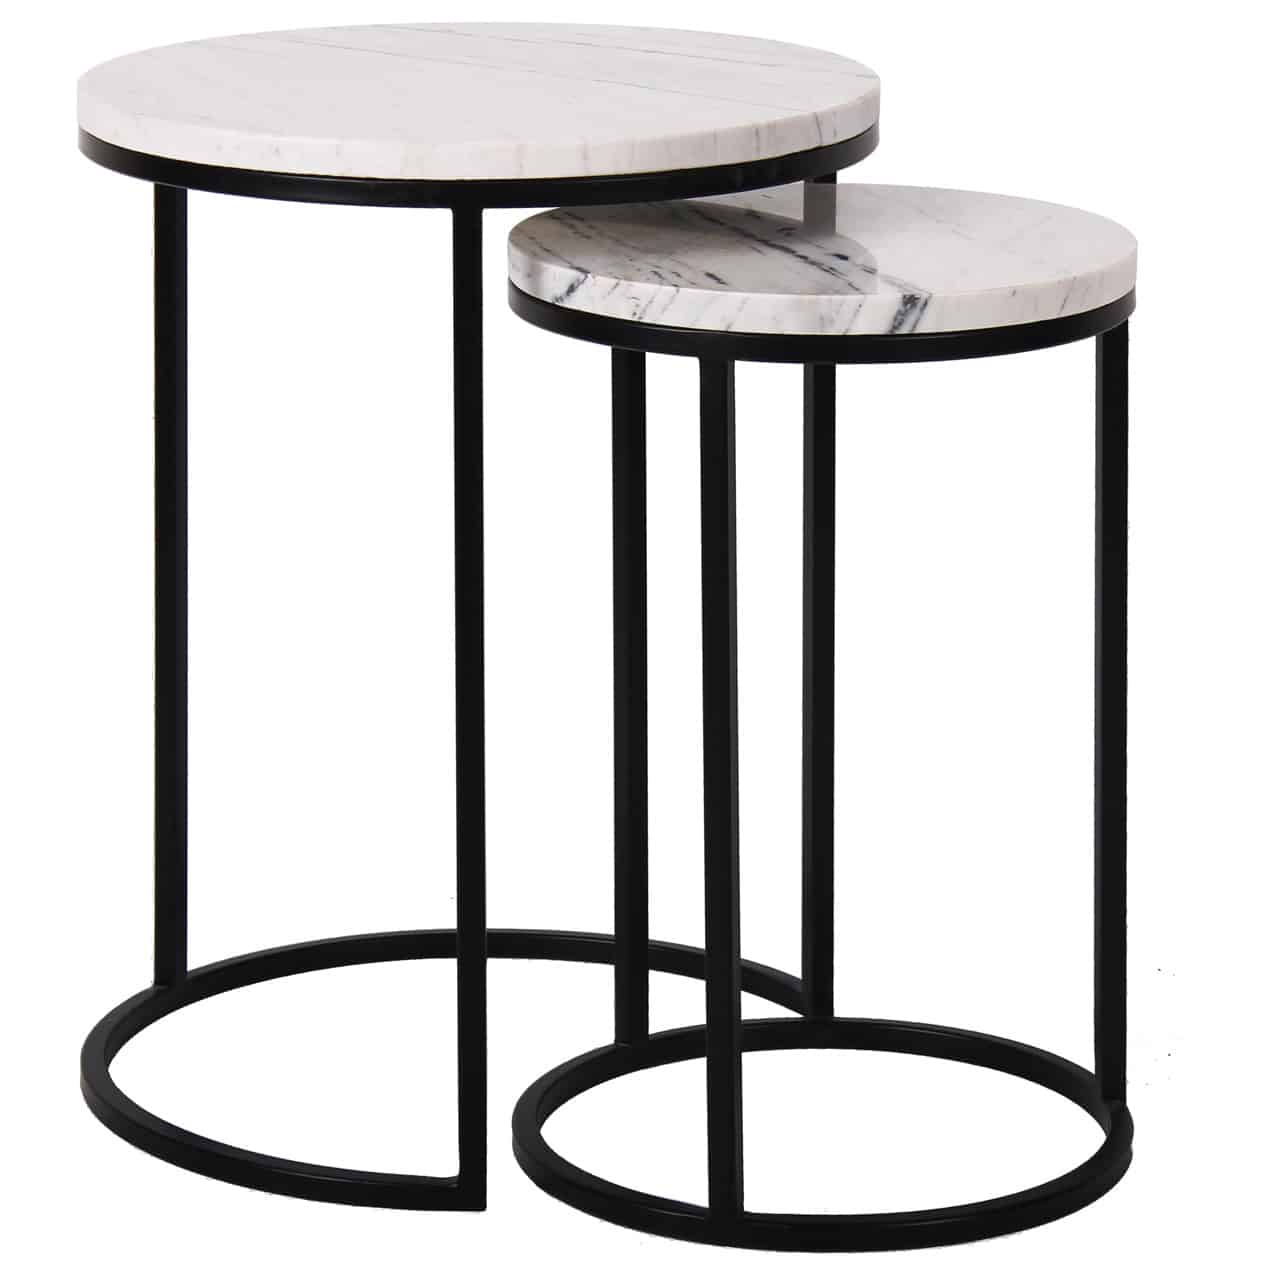 Beistelltisch 2er Set, bestehend aus zwei runden, verschieden hohen  Metallgestellen in schwarz, darauf jeweils eine runde Tischplatte  aus weißem Carrara Marmor; beide Tische lassen sich ineinanderschieben.